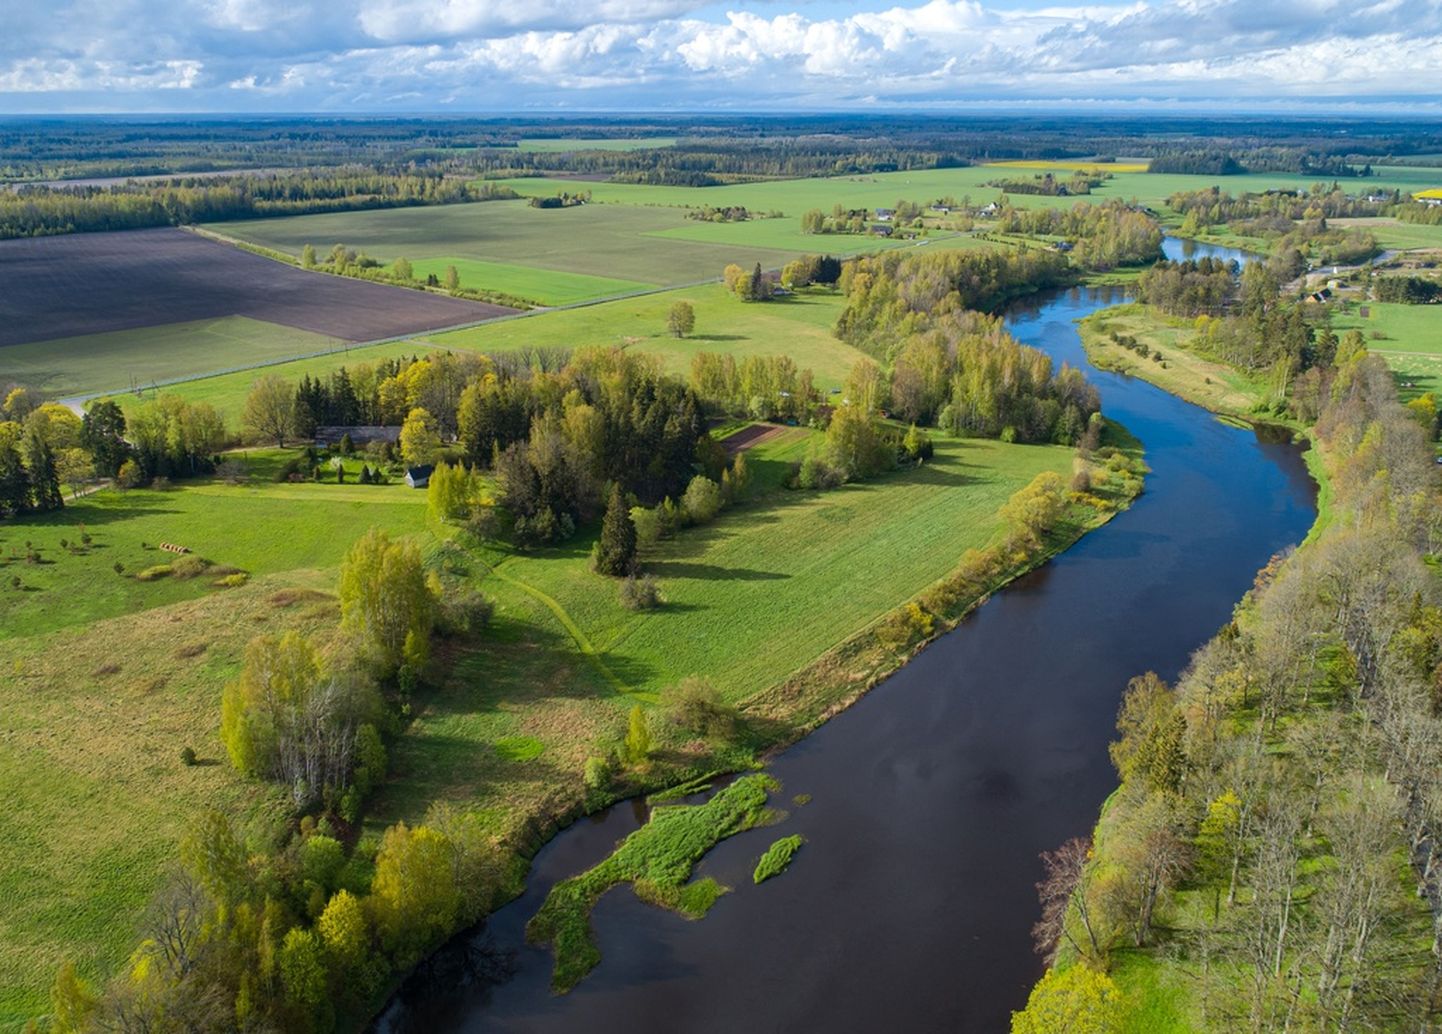 Paindlikud tööviisid muudavad noortele peredele ahvatlevaks ka suuremate linnade lähedased looduskaunid piirkonnad. Fotol Pärnu jõgi.